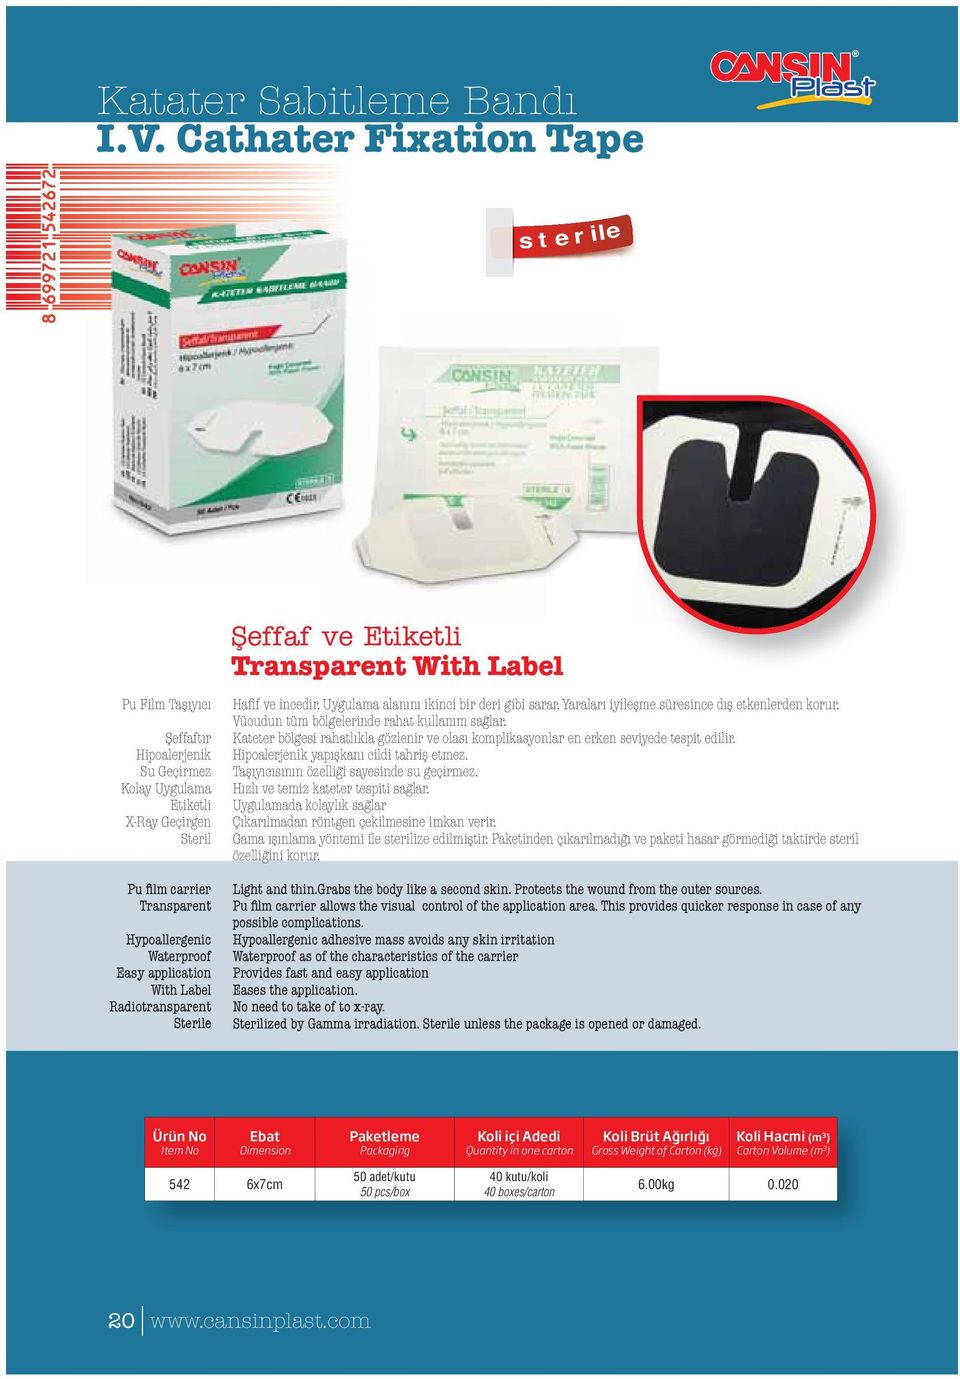 Hypoallergenic Waterproof Easy application With Label Radiotransparent Sterile Hafif ve incedir. Uygulama alanını ikinci bir deri gibi sarar. Yaraları iyileşme süresince dış etkenlerden korur.